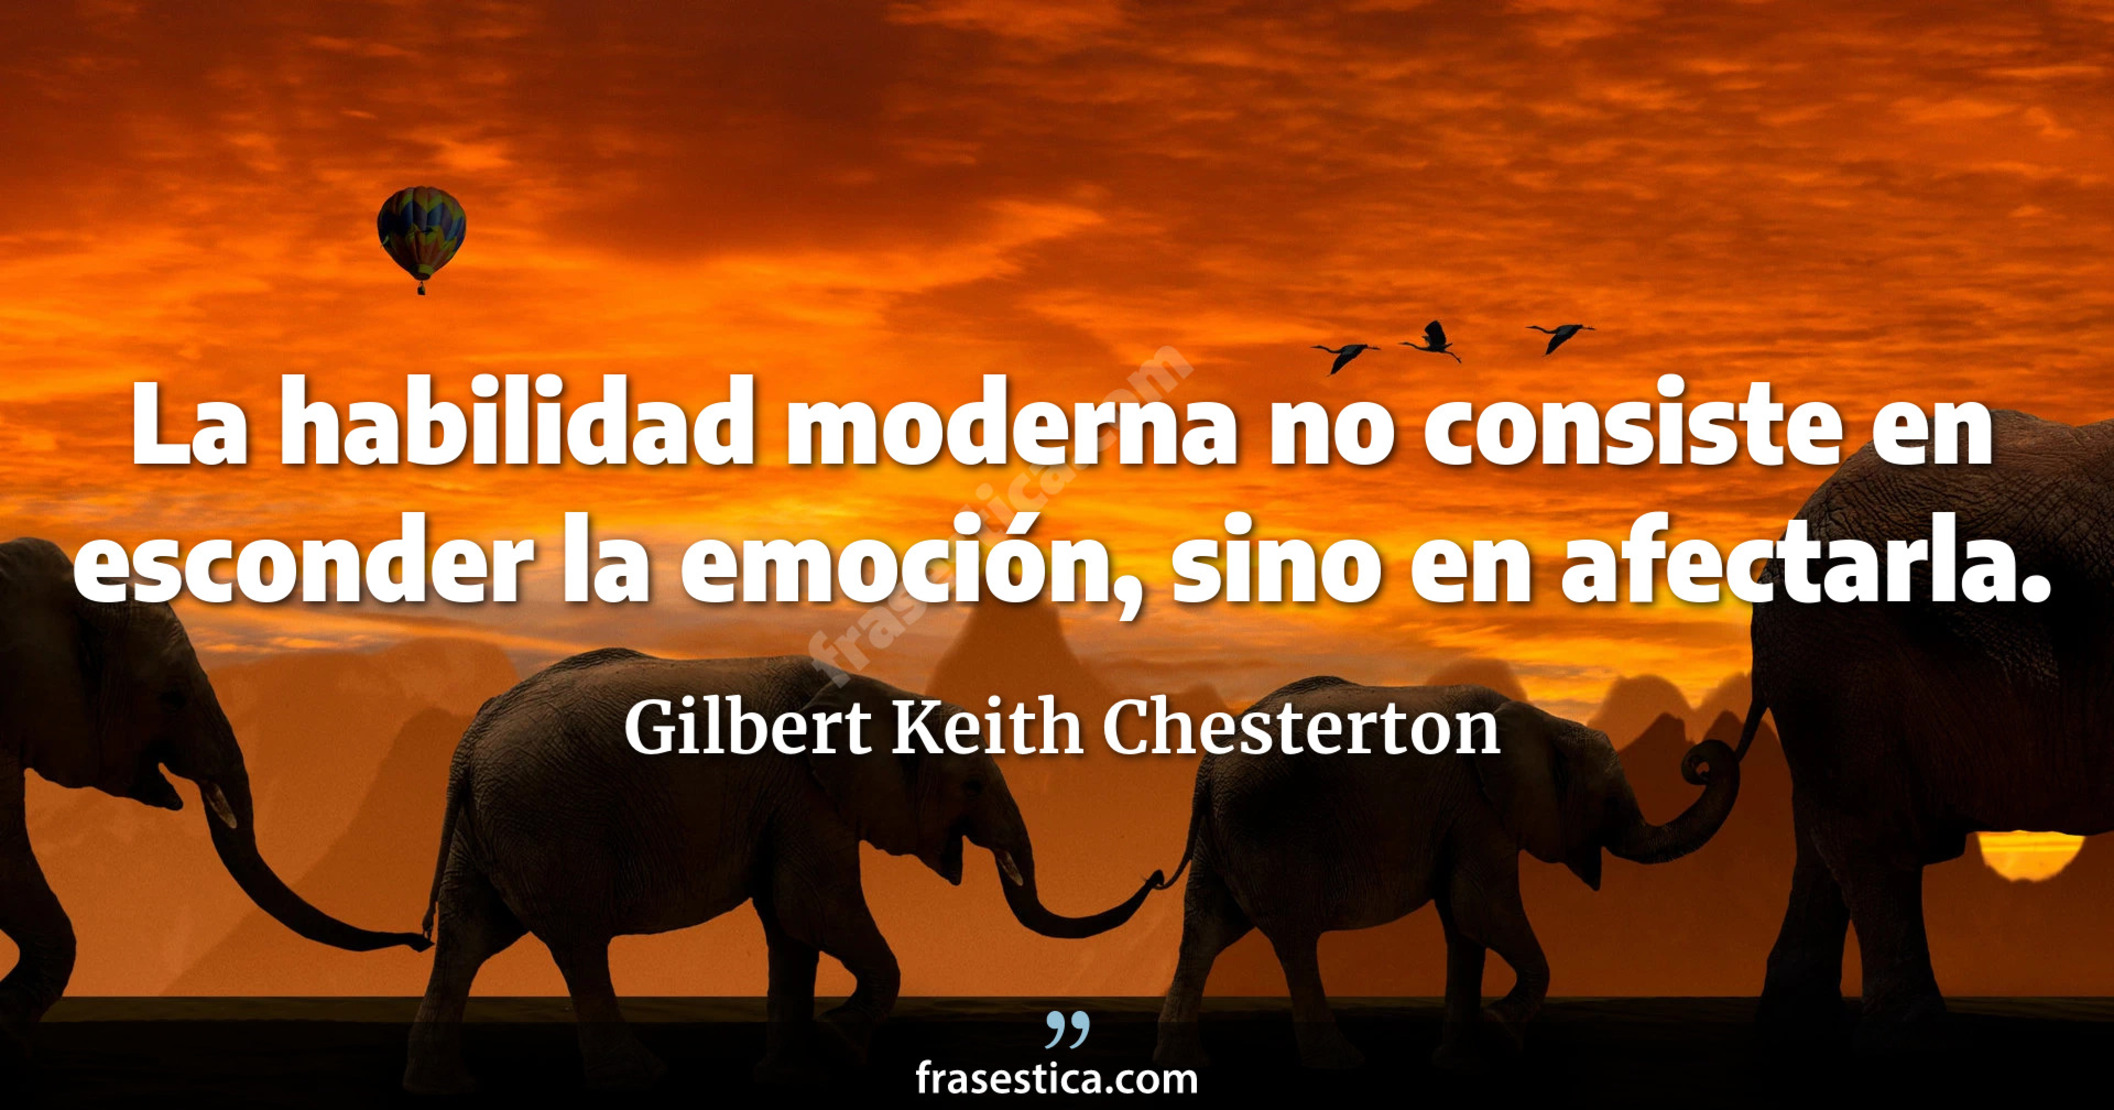 La habilidad moderna no consiste en esconder la emoción, sino en afectarla. - Gilbert Keith Chesterton